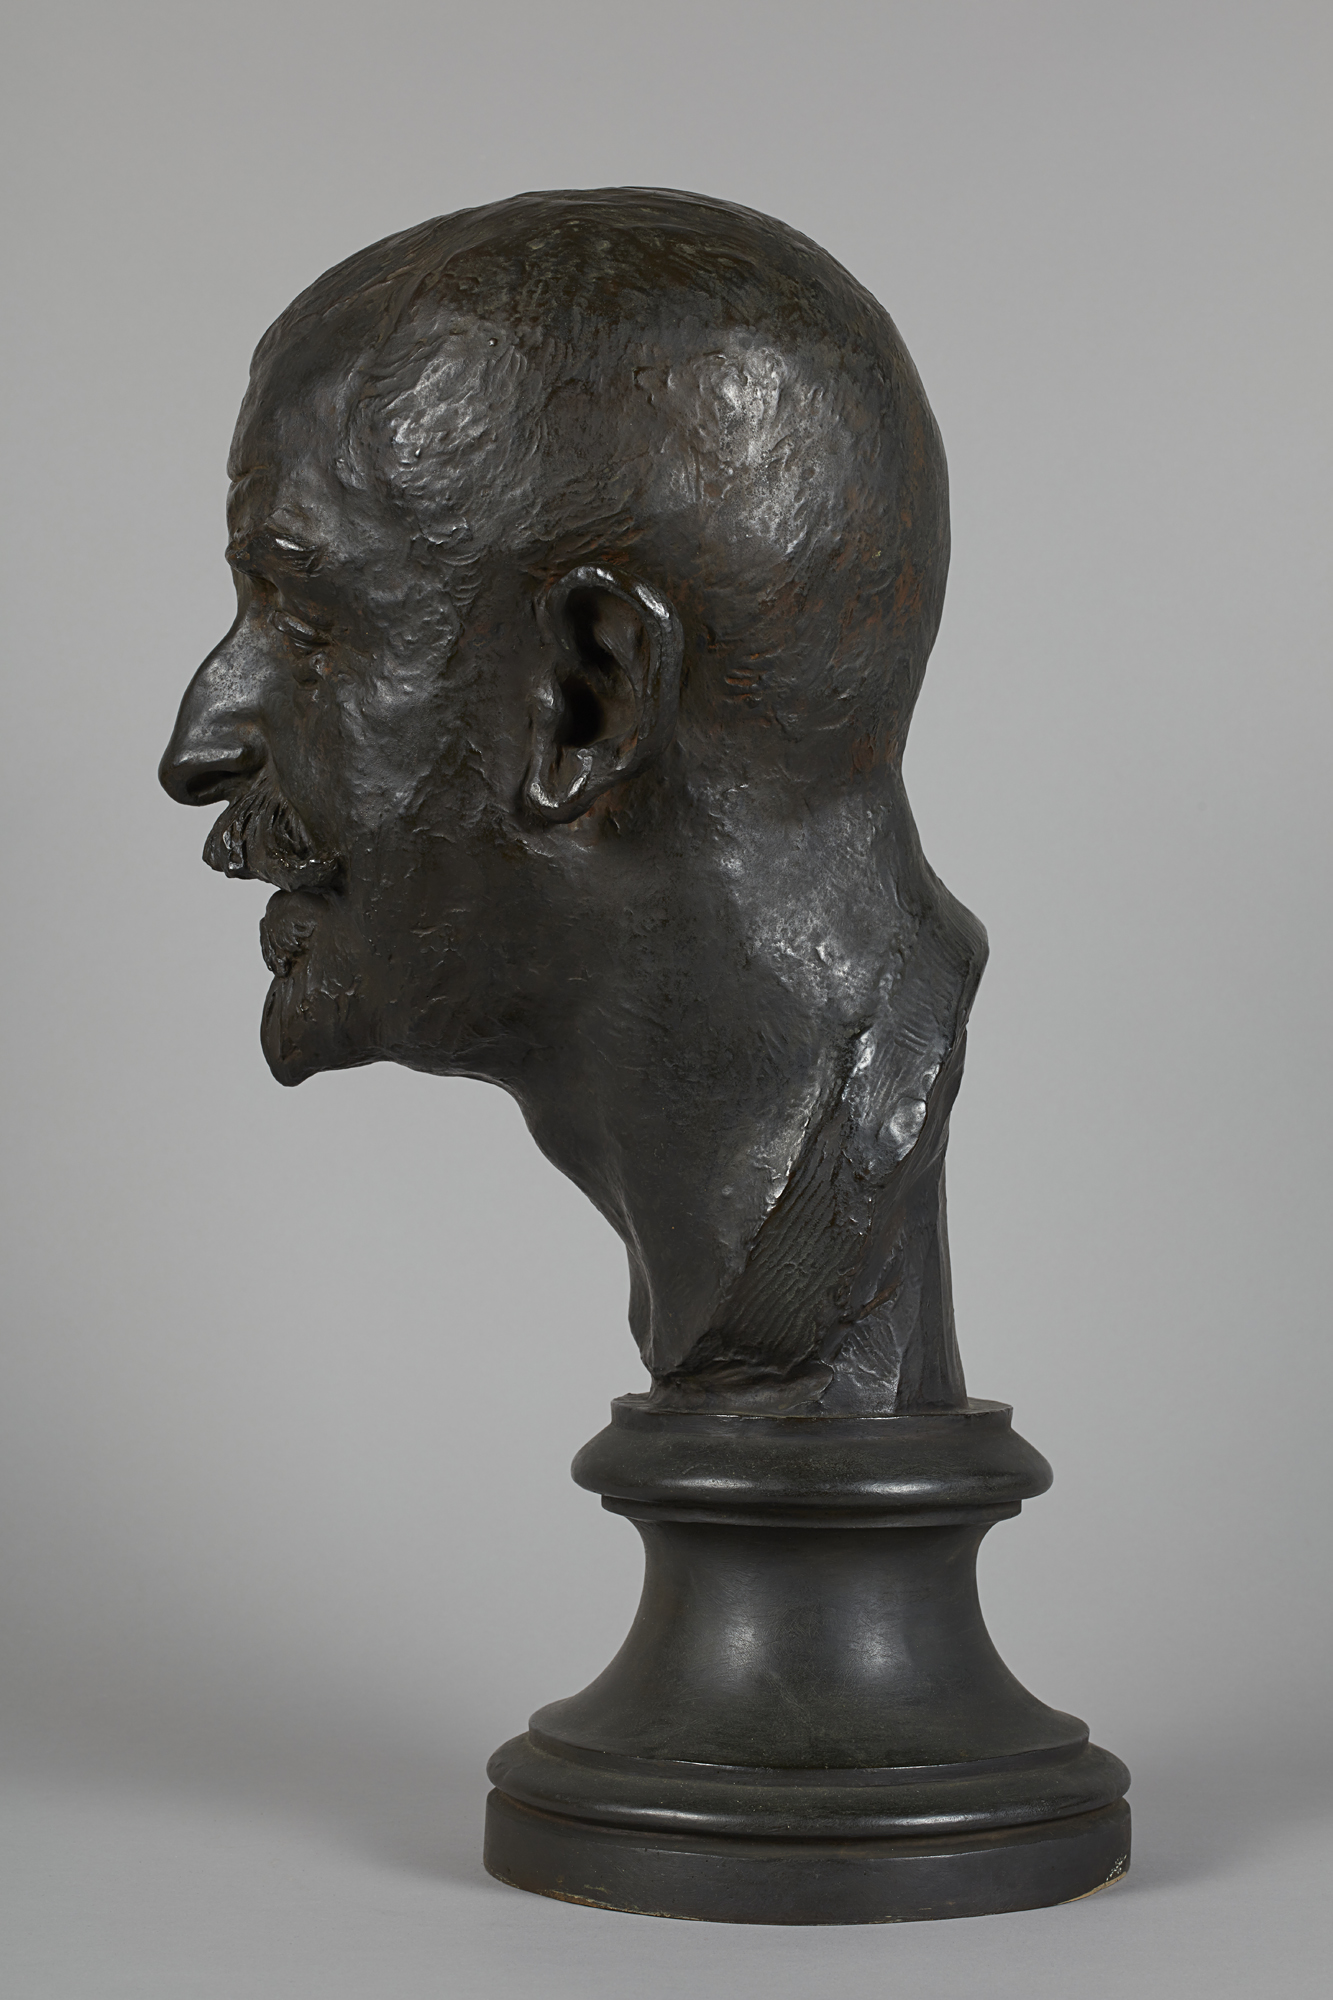 Roche, Pierre (1855 - 1922-01-18), Buste de Joris-Karl Huysmans (Titre principal), 1900. Bronze. Petit Palais, Musée des Beaux-Arts de la Ville de Paris.